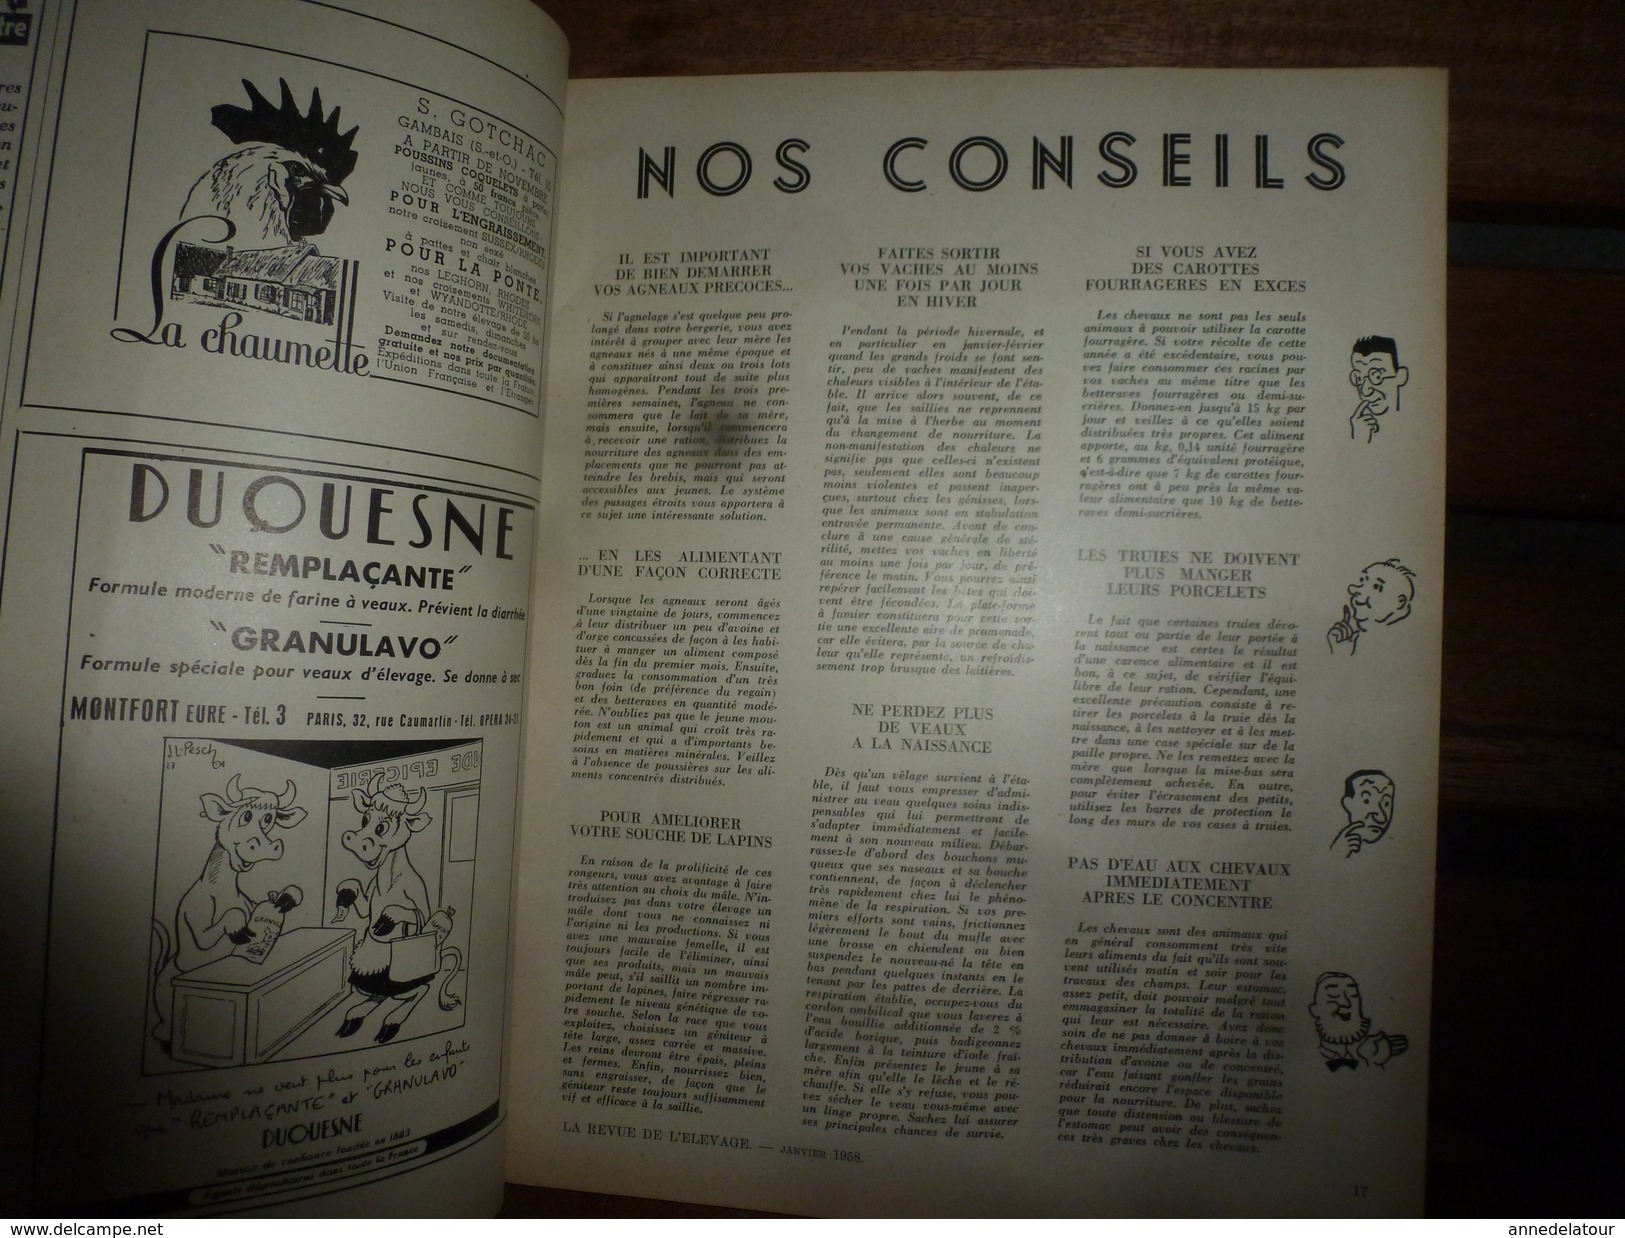 1958 LRDLE  : Le Mouton; Le Porc ; Basse-cour ; Nos Conseils; Etc - Animales